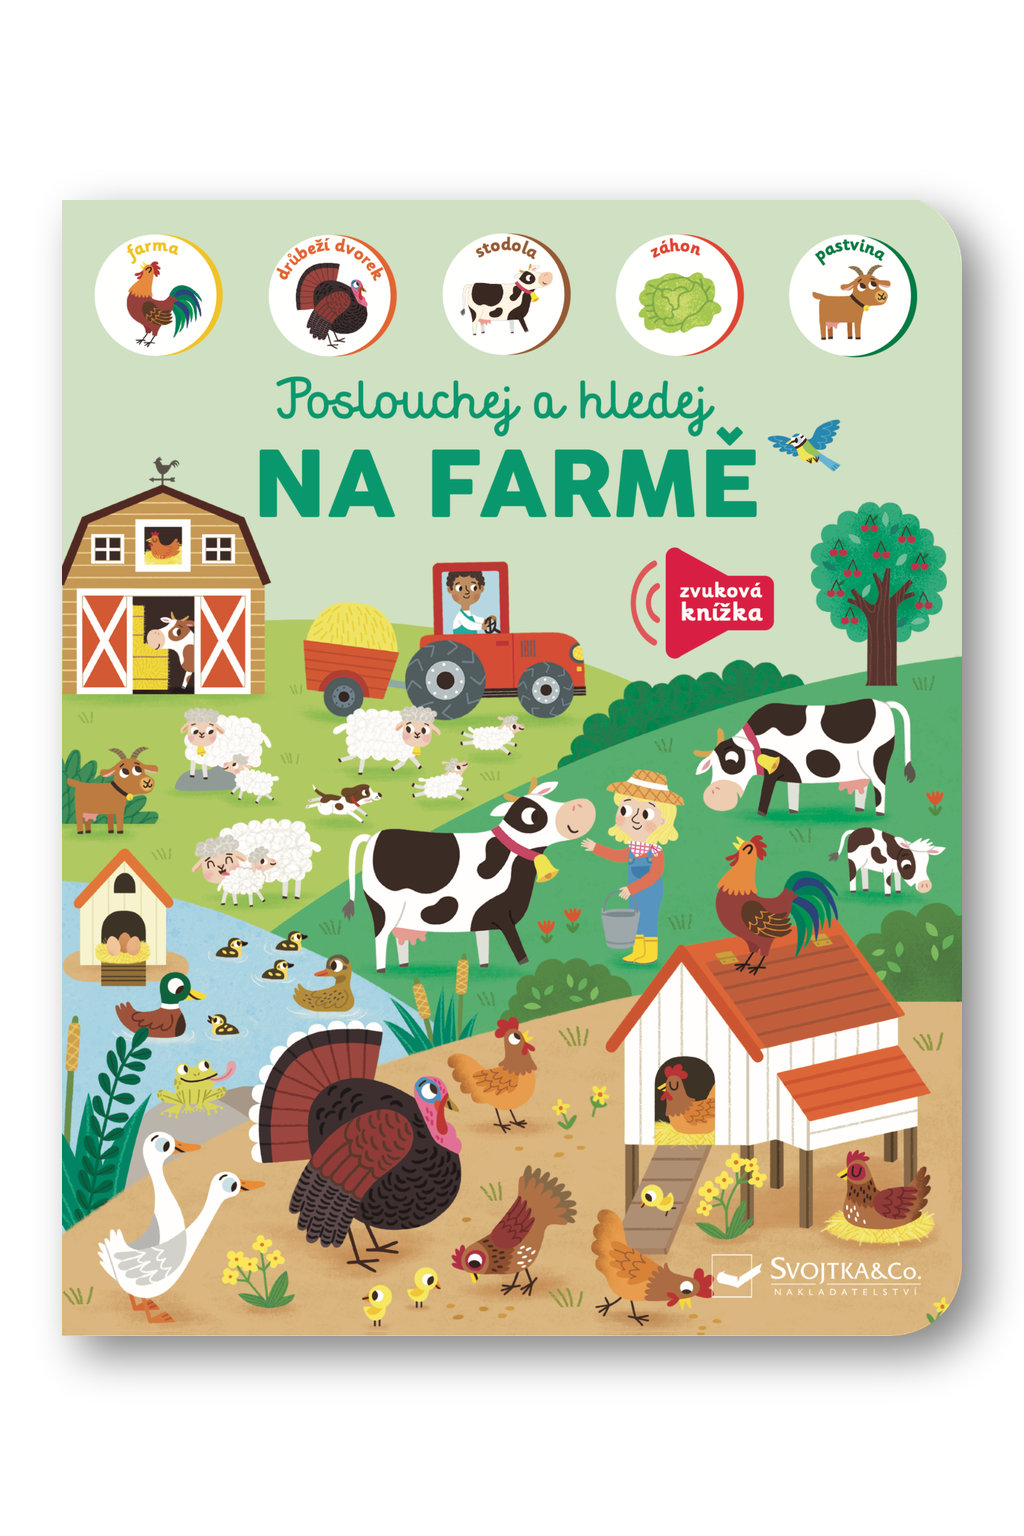 Na farmě - poslouchej a hledej ilustrace Kasia Dudziuk